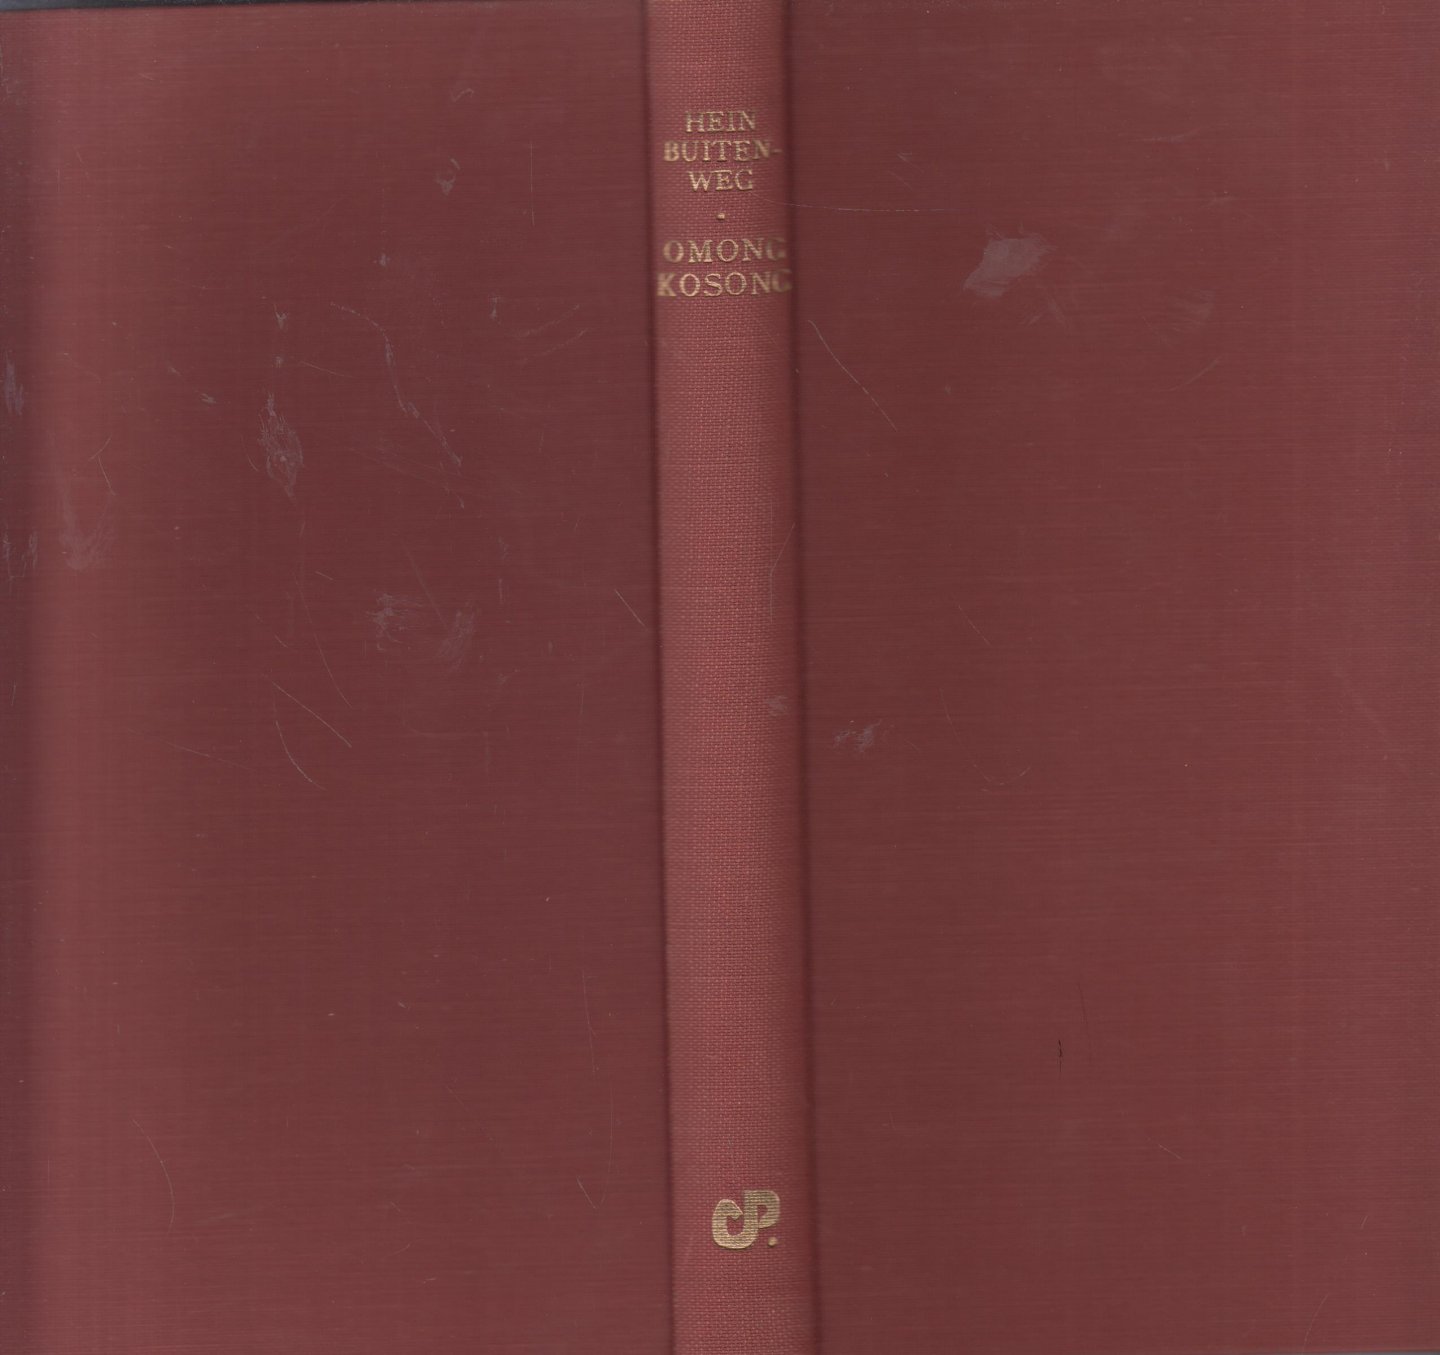 Buitenweg (pseudoniem van H. Chr. Meyer), Hein - Omong kosong - Vreugden uit "Het Oude Indië"